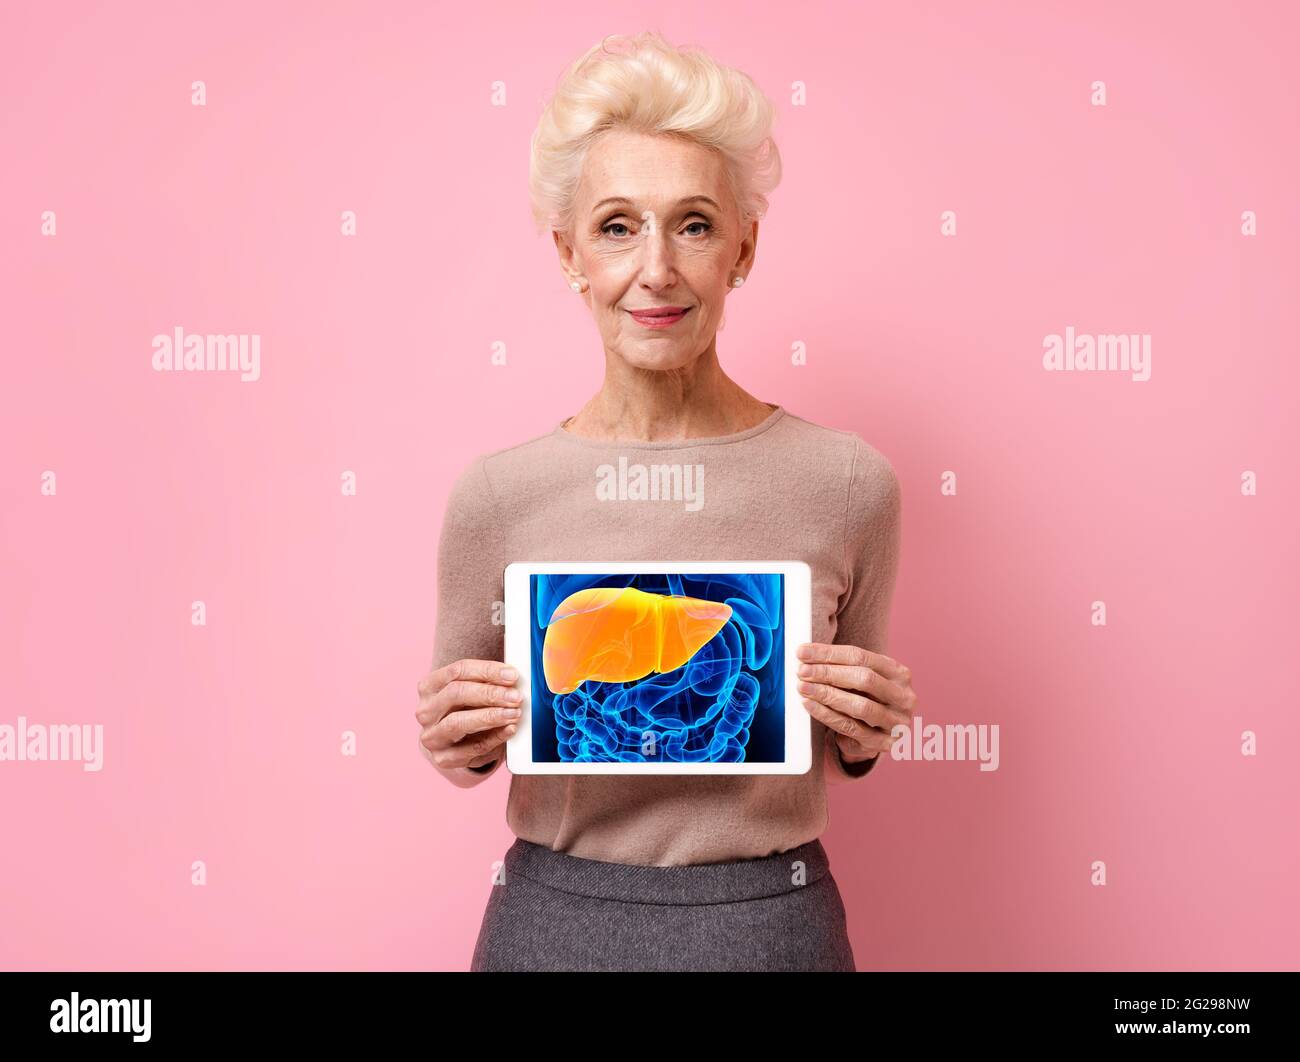 Une femme attirante montre l'image radiologique du foie. Photo d'une femme âgée souriante avec une tablette dans les mains sur fond rose. Concept médical Banque D'Images